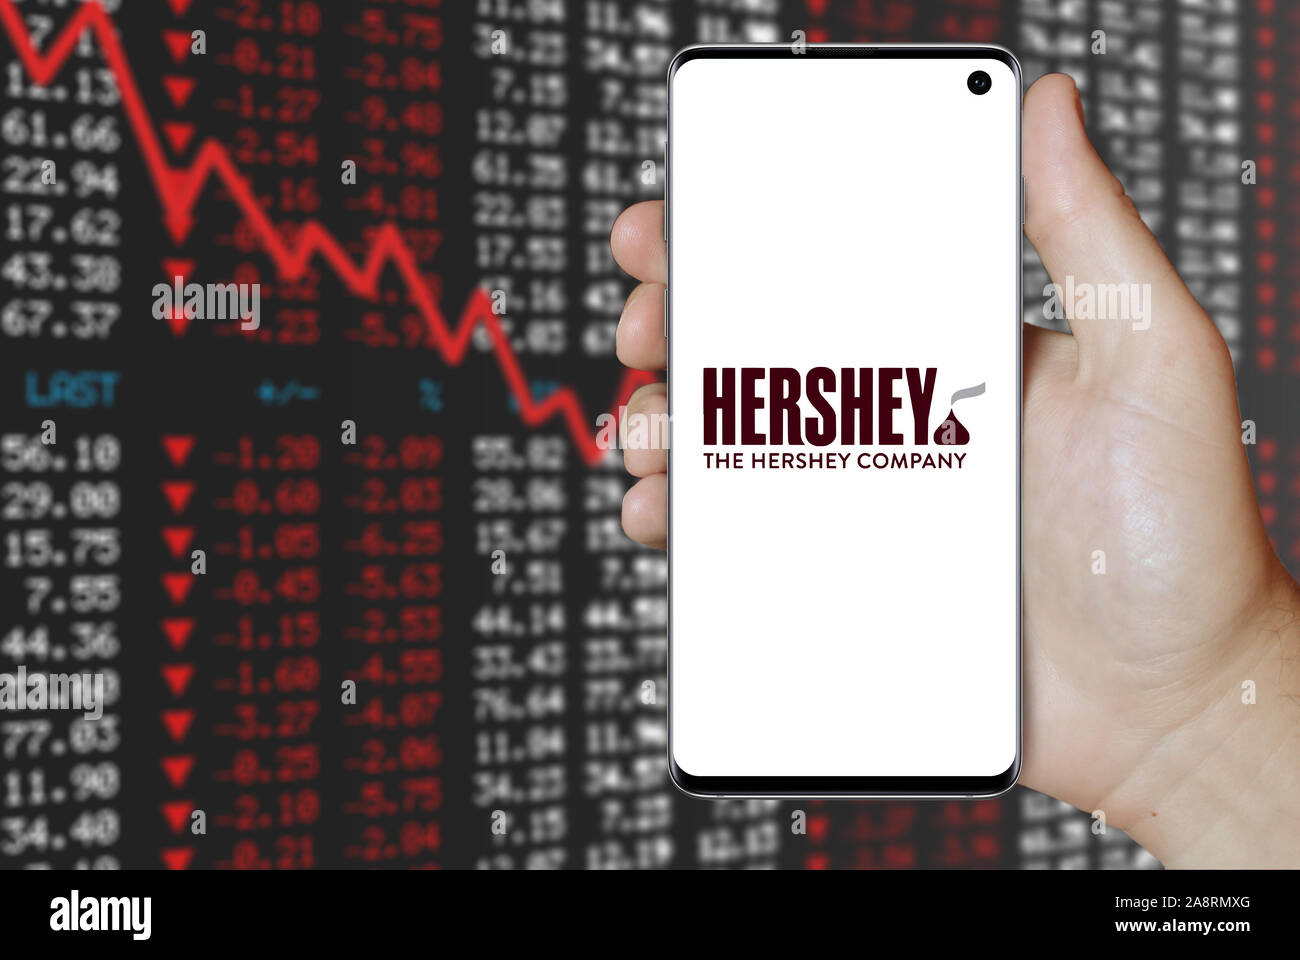 Logo der öffentlichen Unternehmen der Hershey Company auf einem Smartphone. Negative Börse Hintergrund. Credit: PIXDUCE Stockfoto